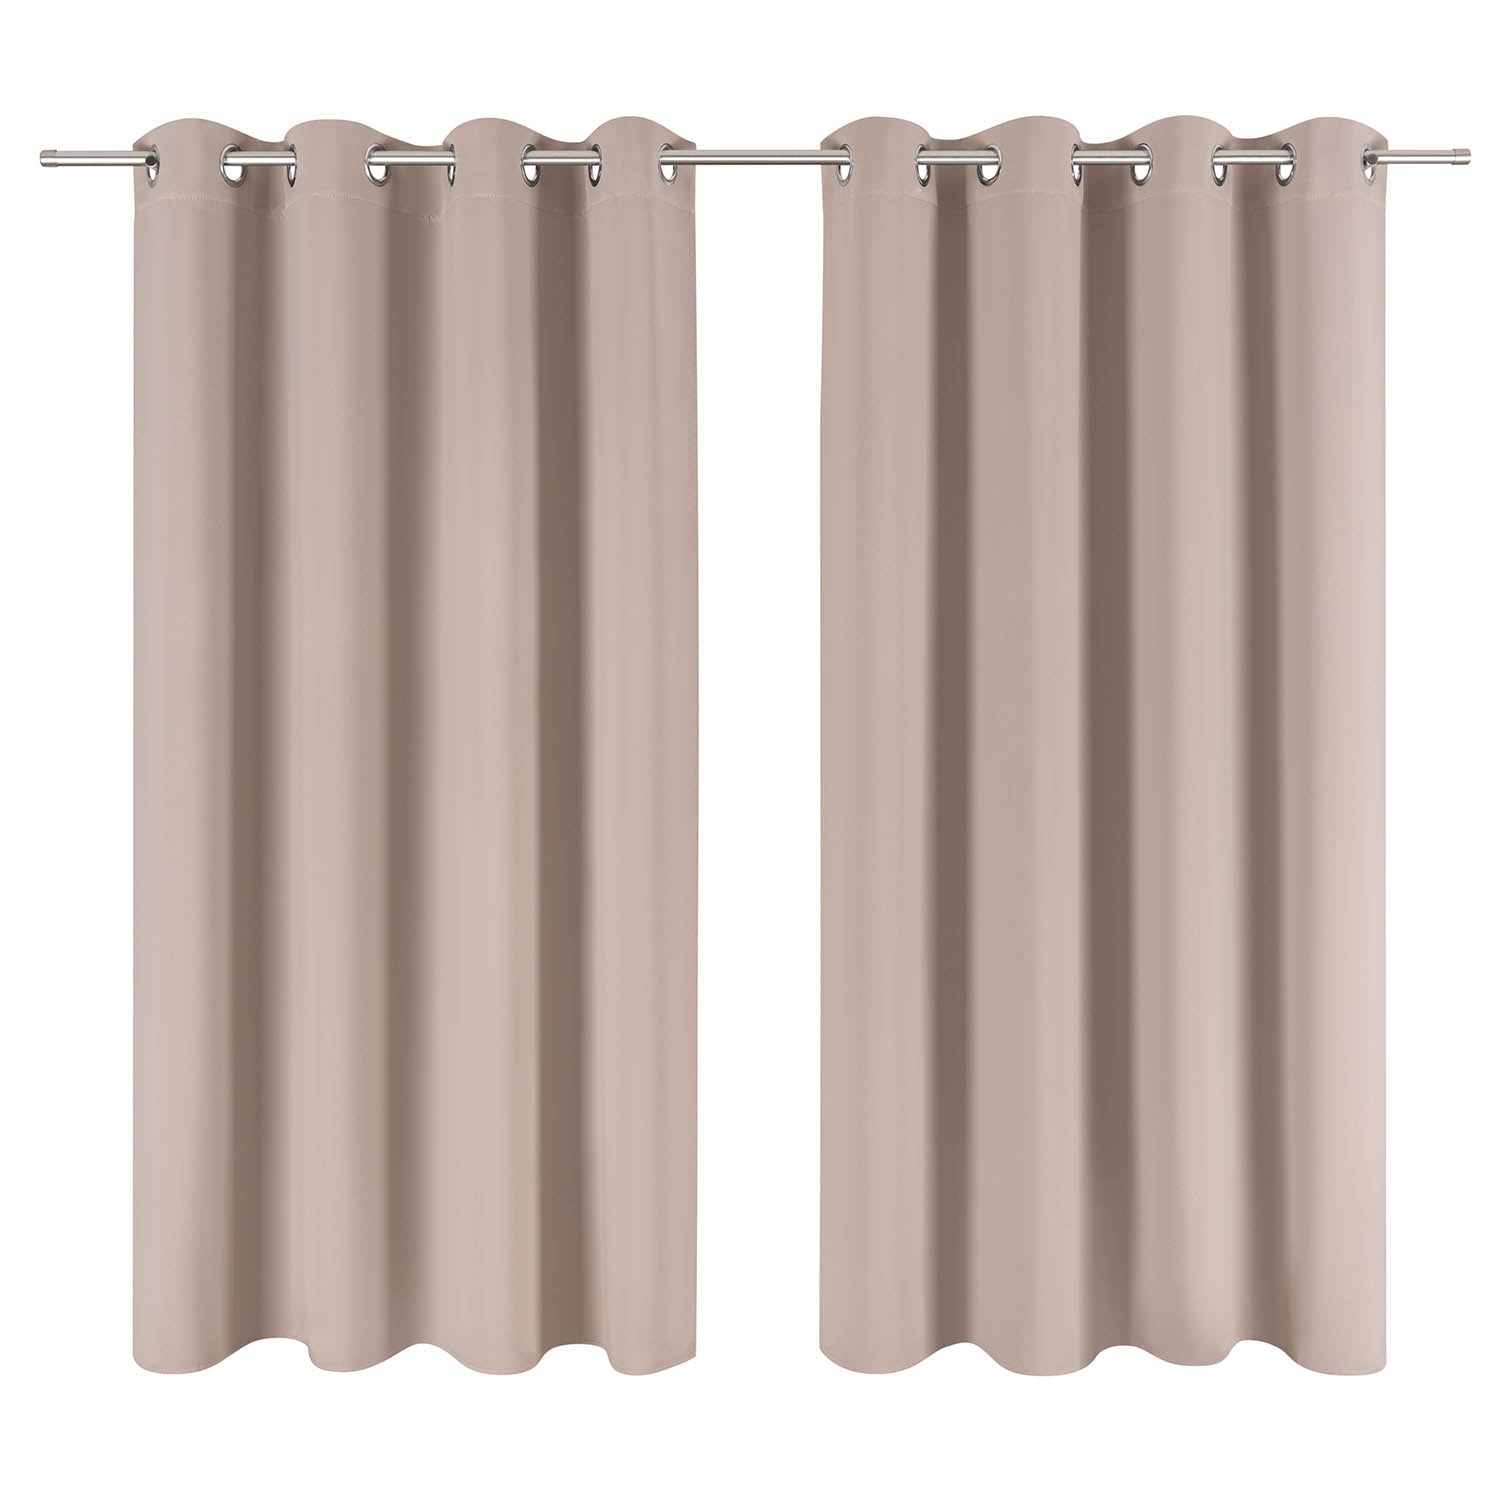 Zwei elegante Vorhänge an einer Vorhangstange vollständig geschlossen um einen Raum abzudunkeln oder zu gestalten.